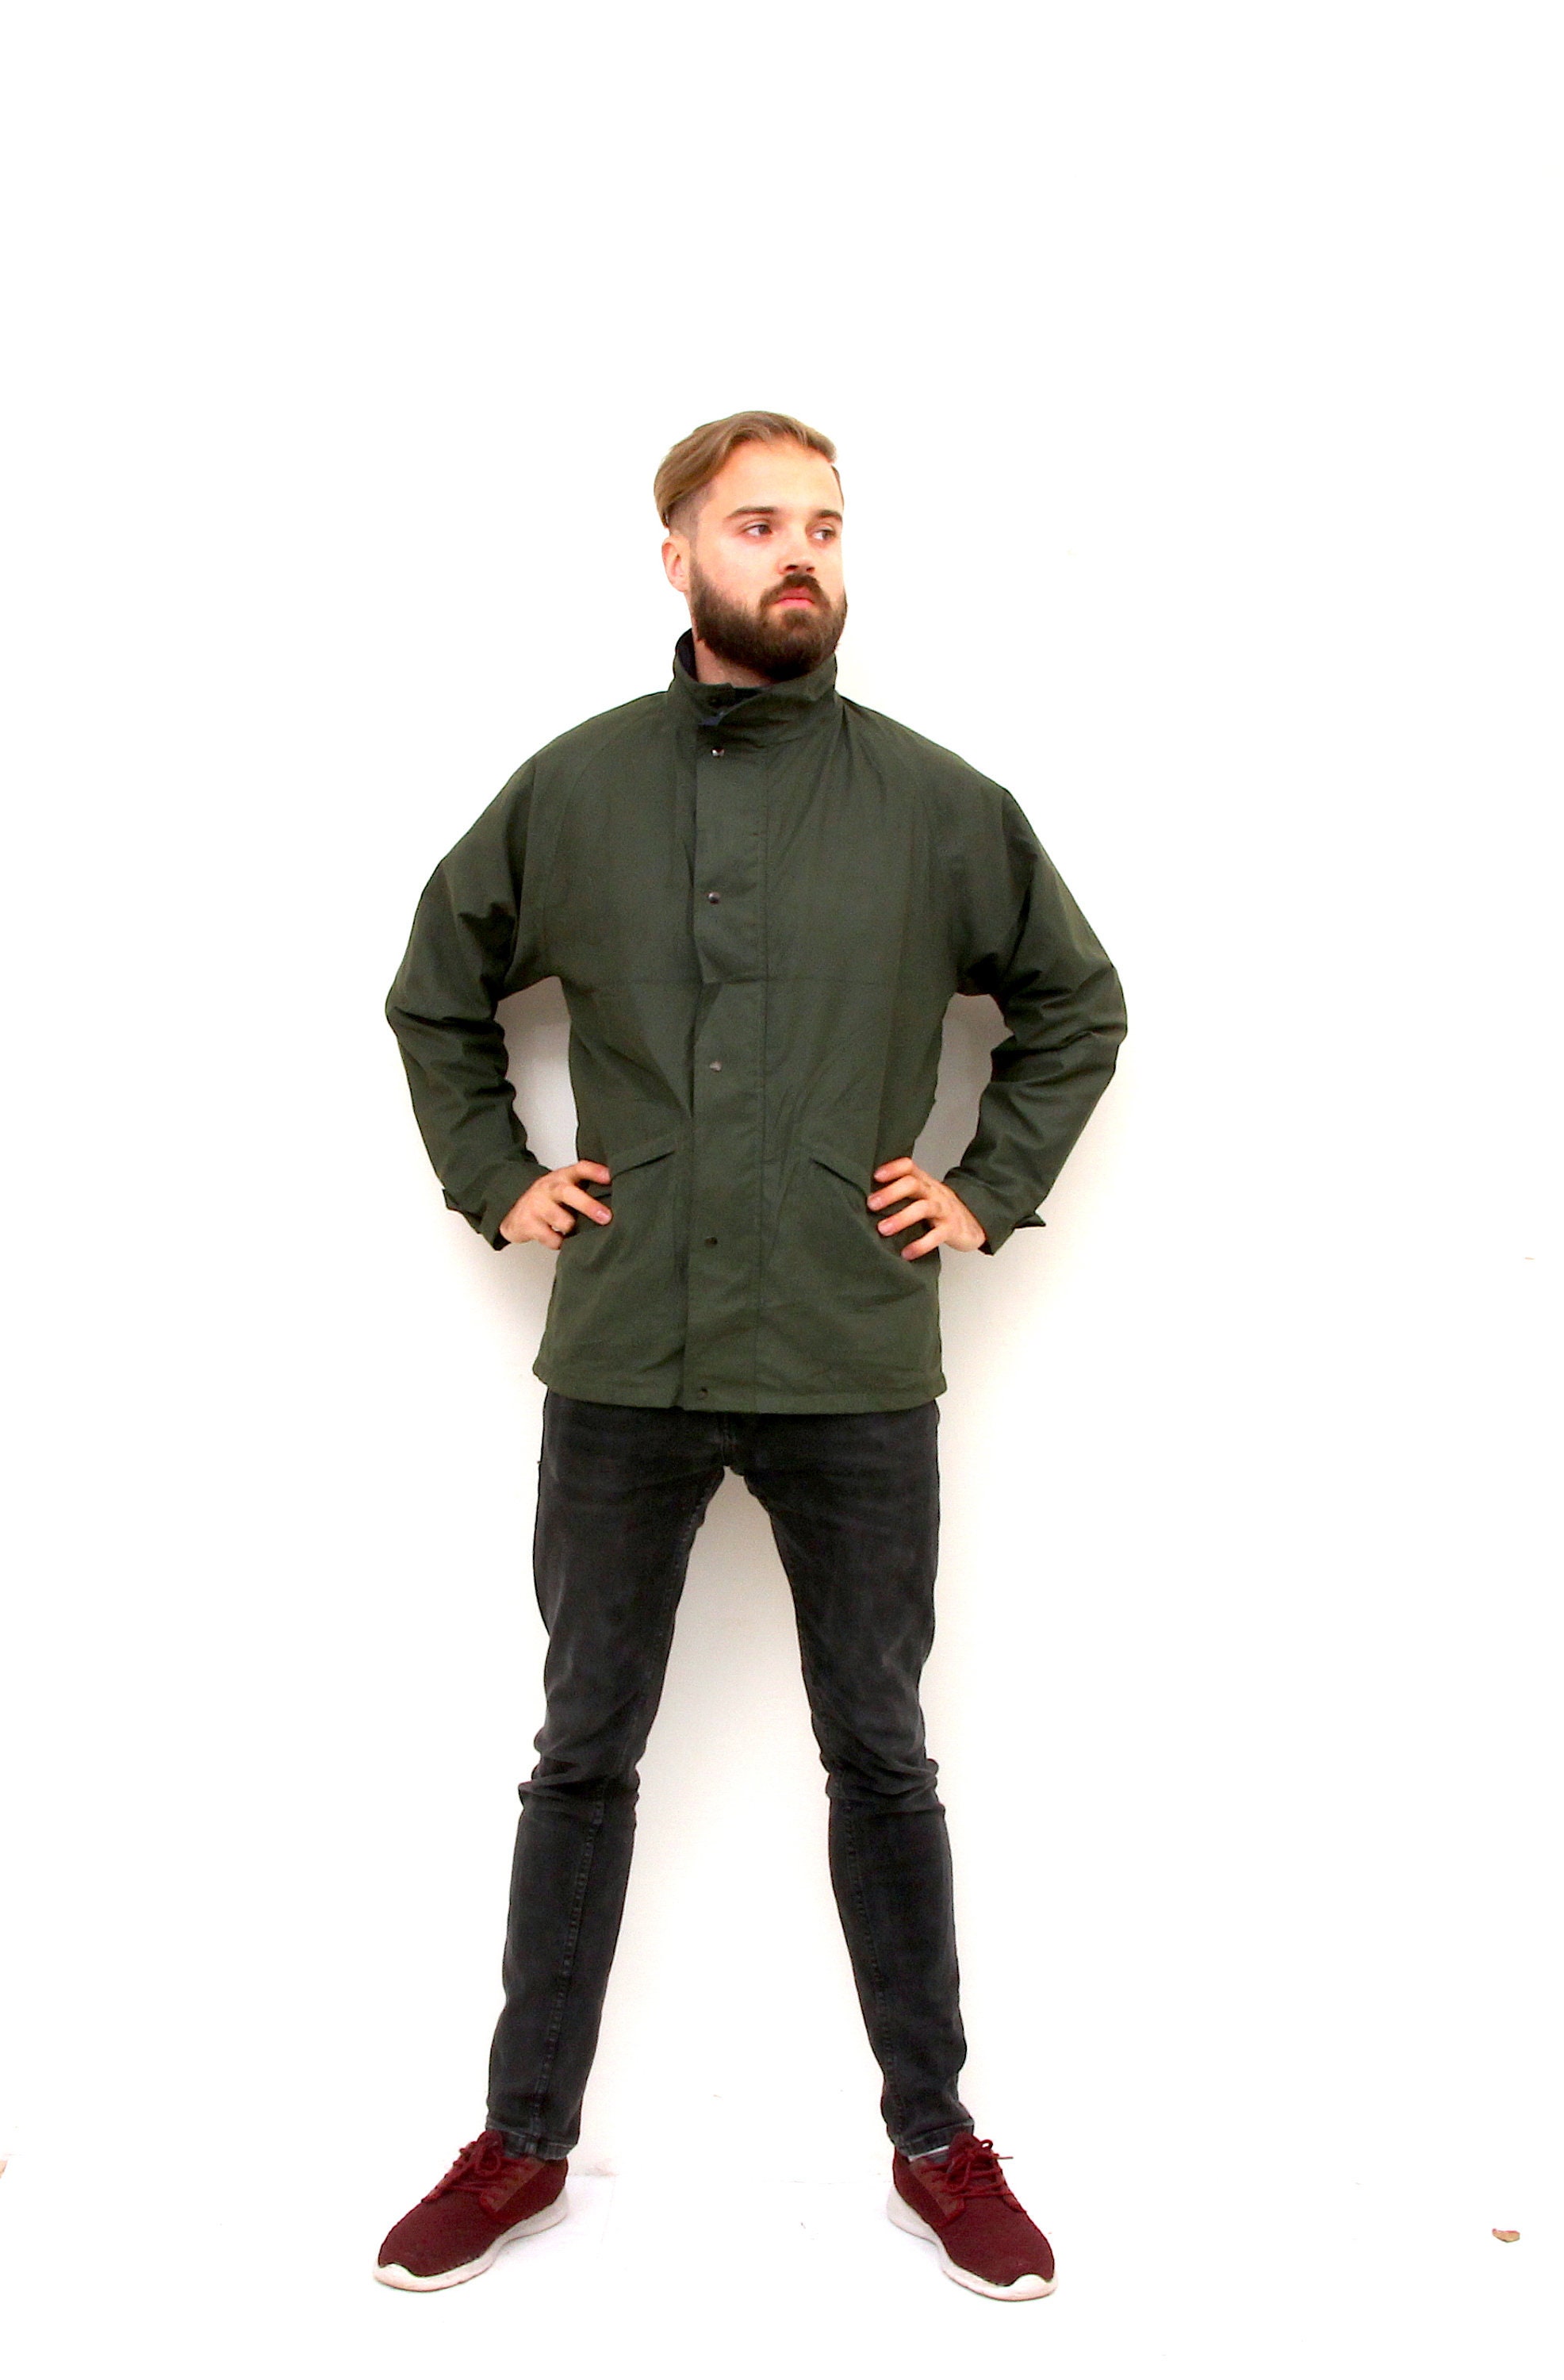 Minimalist Military Khaki Jacket Unisex Army Full Zip Jacket M | Etsy